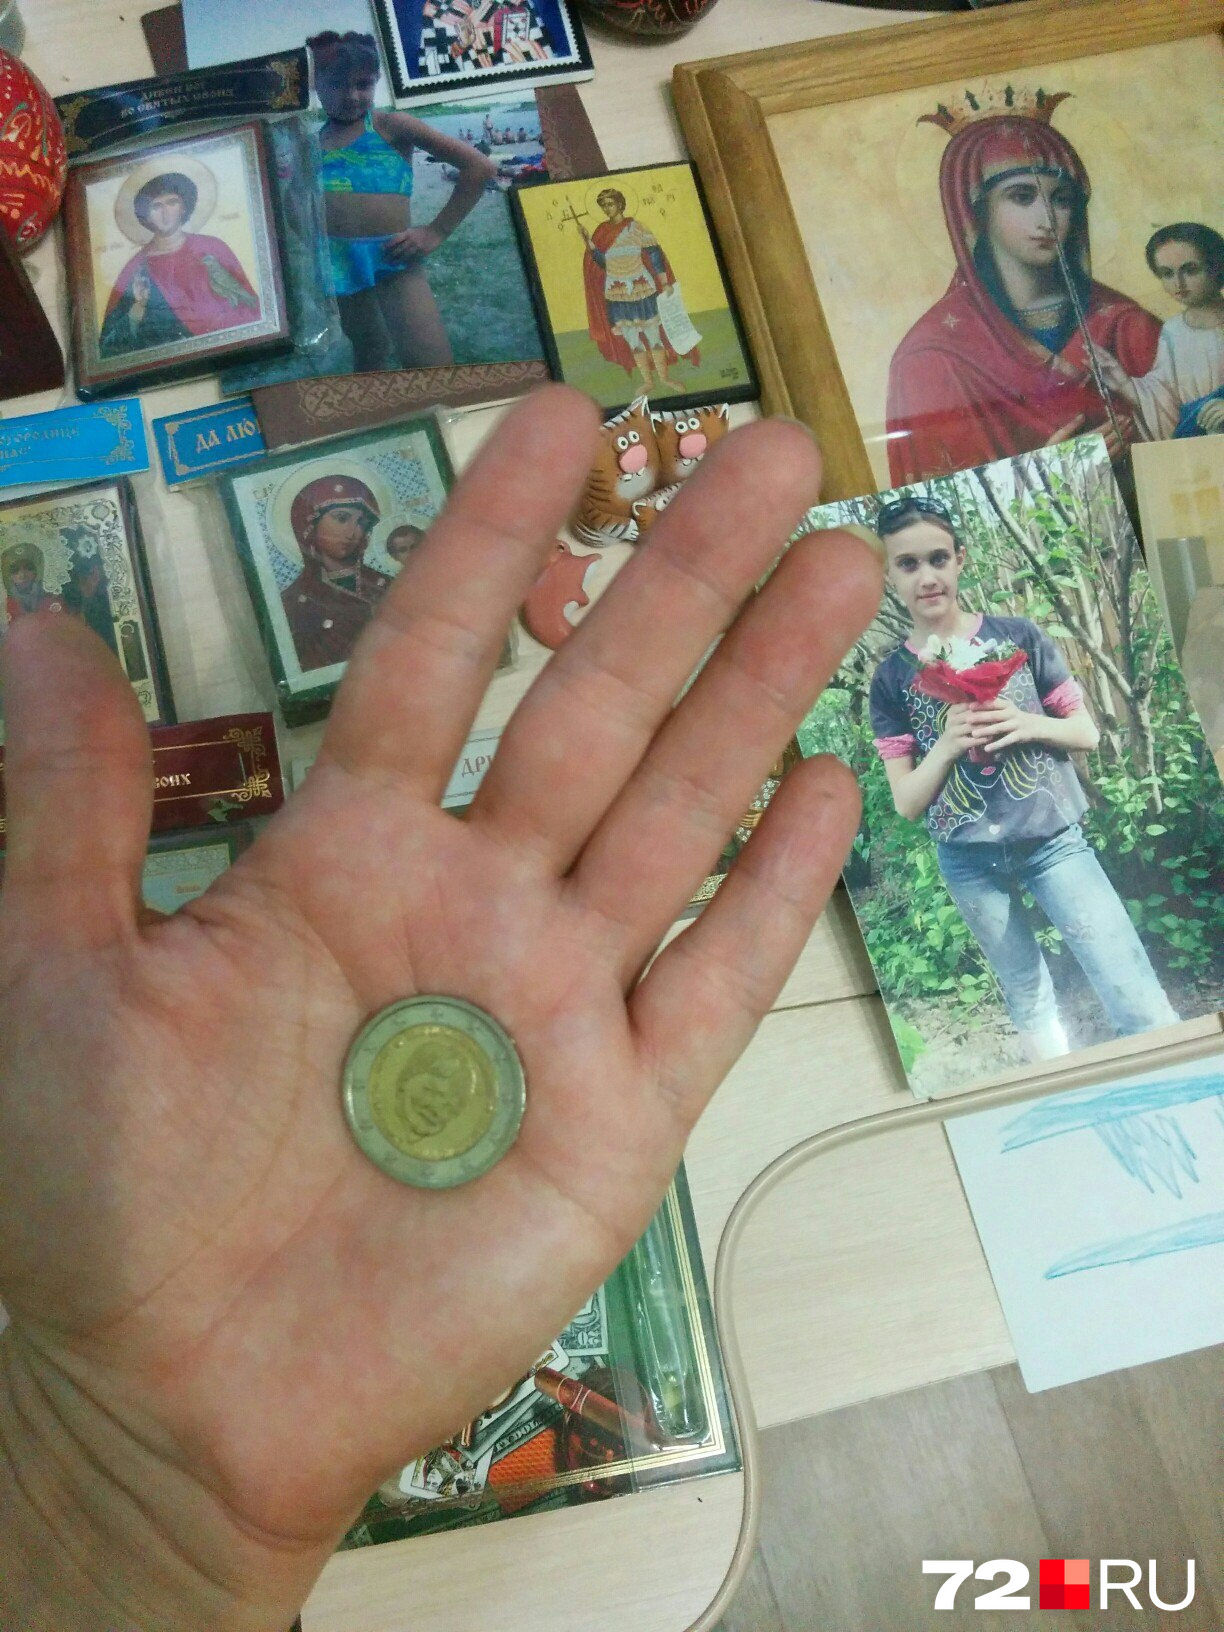 Несколько лет назад Наталья рассказывала о том, что их семье прислали «Монету надежды» с пожеланиями скорейшего возвращения Анюты. На снимке среди множества икон виднеется фото Ани. Тут она девочка-подросток. Совсем скоро Ане исполнится 22 года